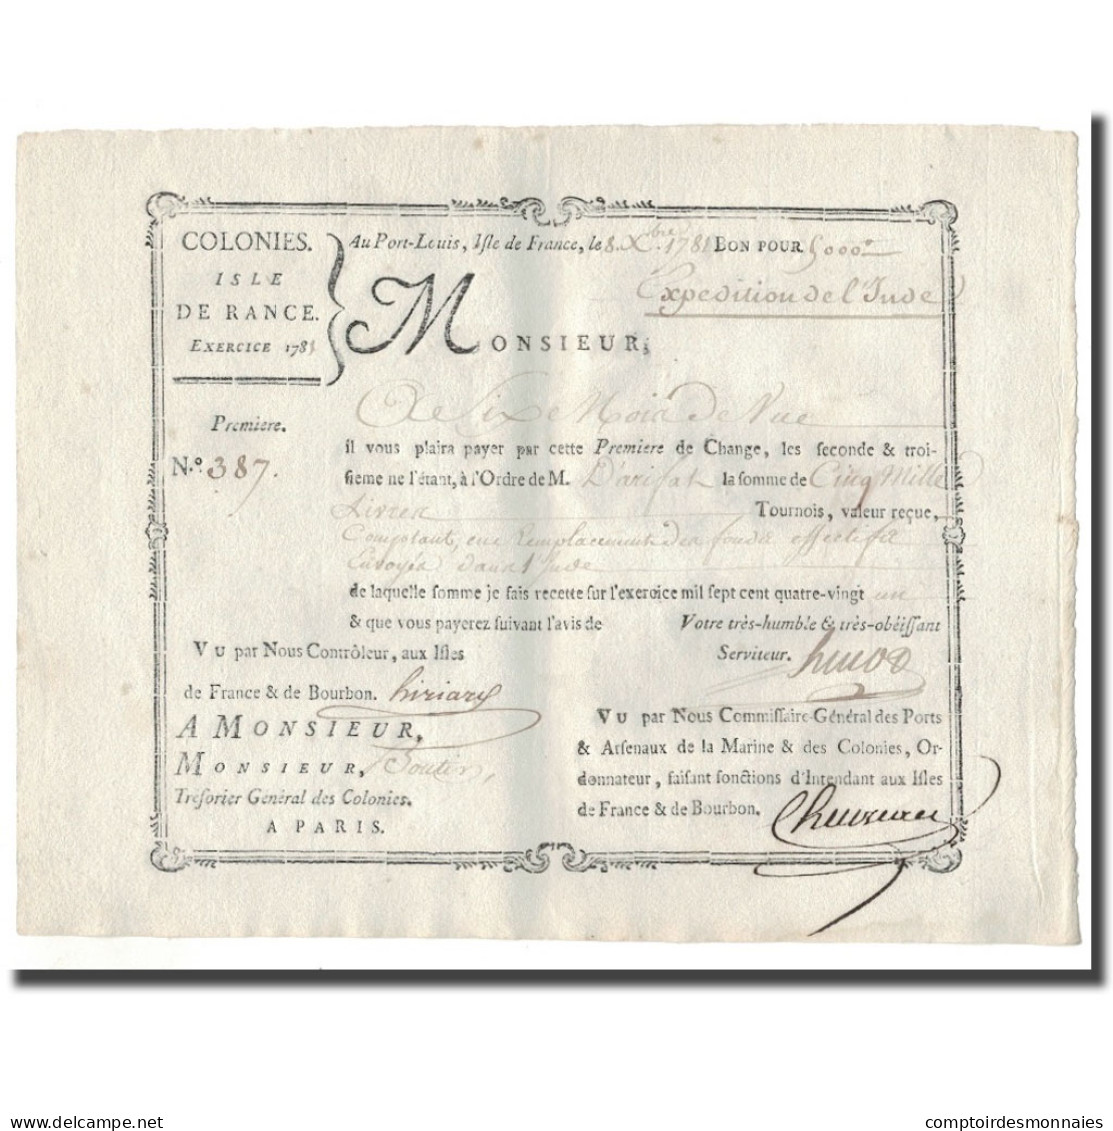 France, Traite, Colonies, Isle De France, 5000 Livres, Expédition De L'Inde - ...-1889 Francs Im 19. Jh.